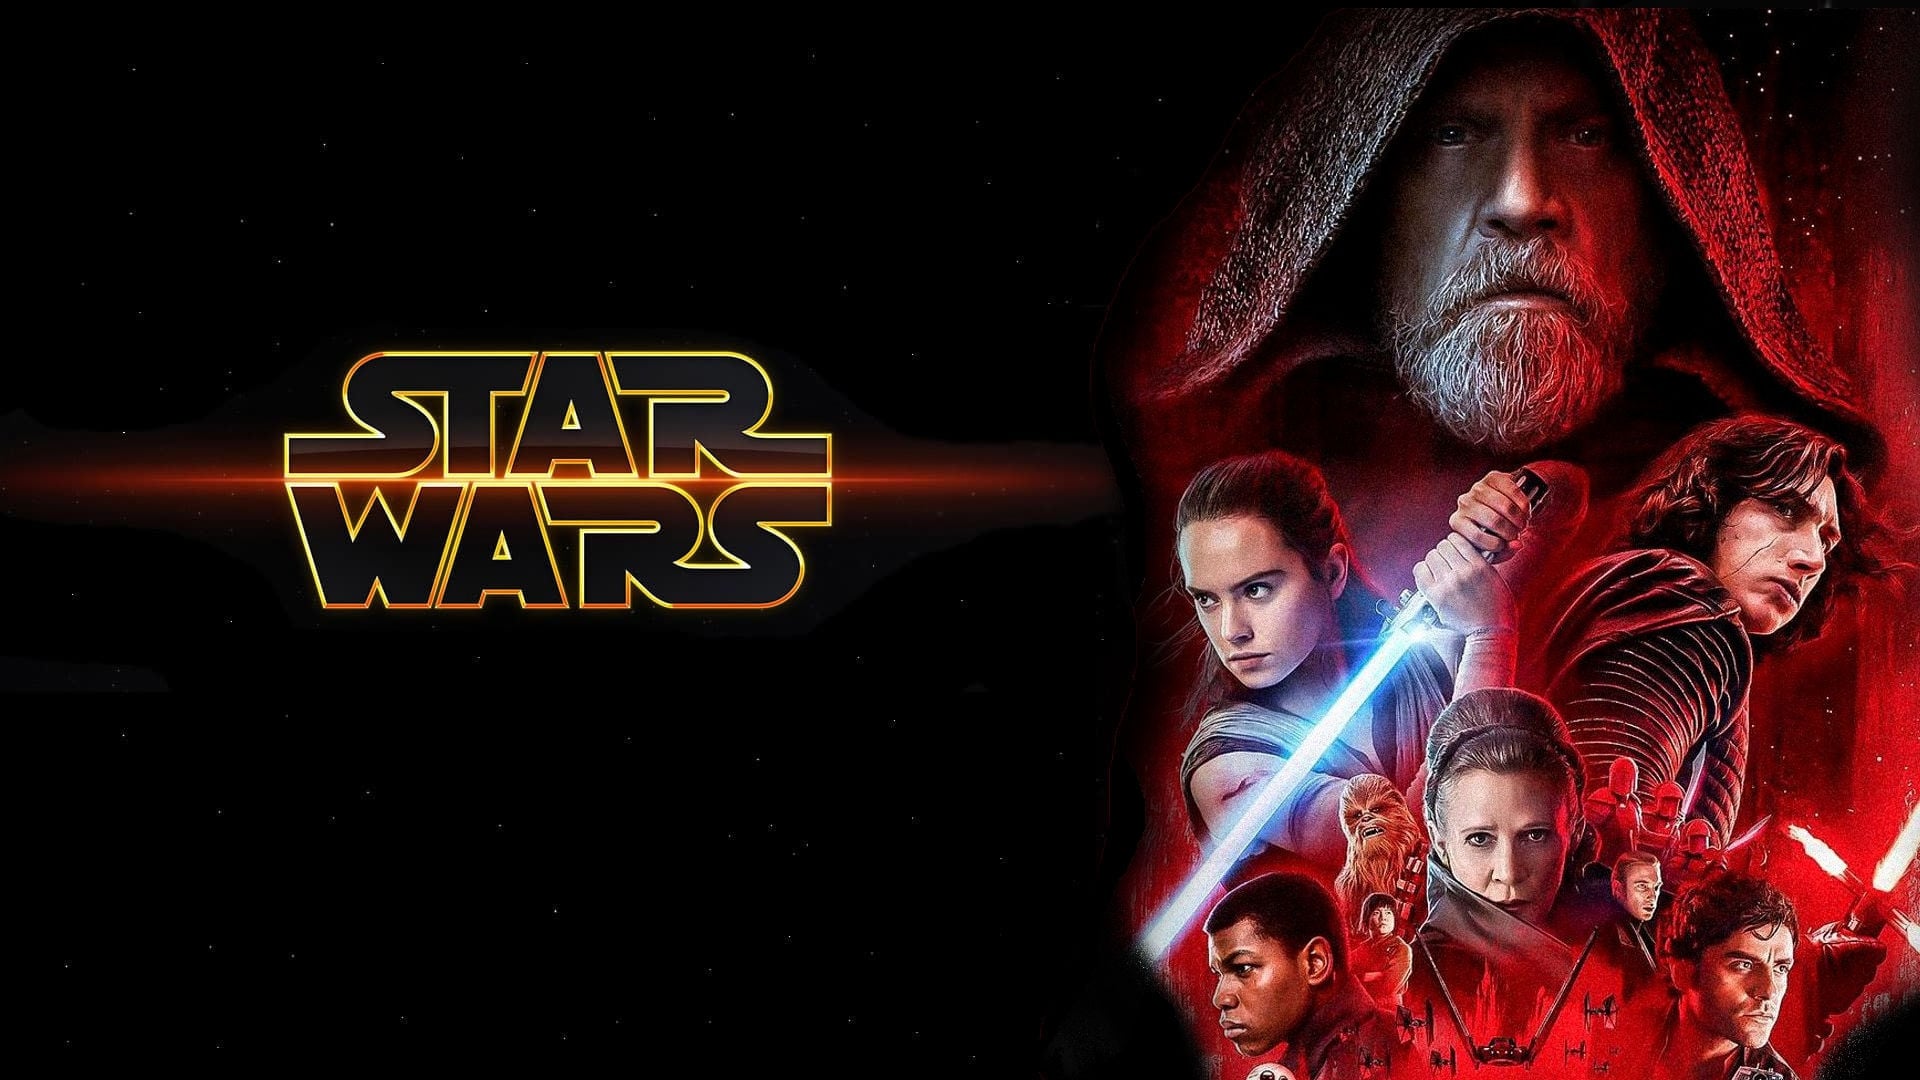 Star Wars Episodio VIII: Los últimos Jedi